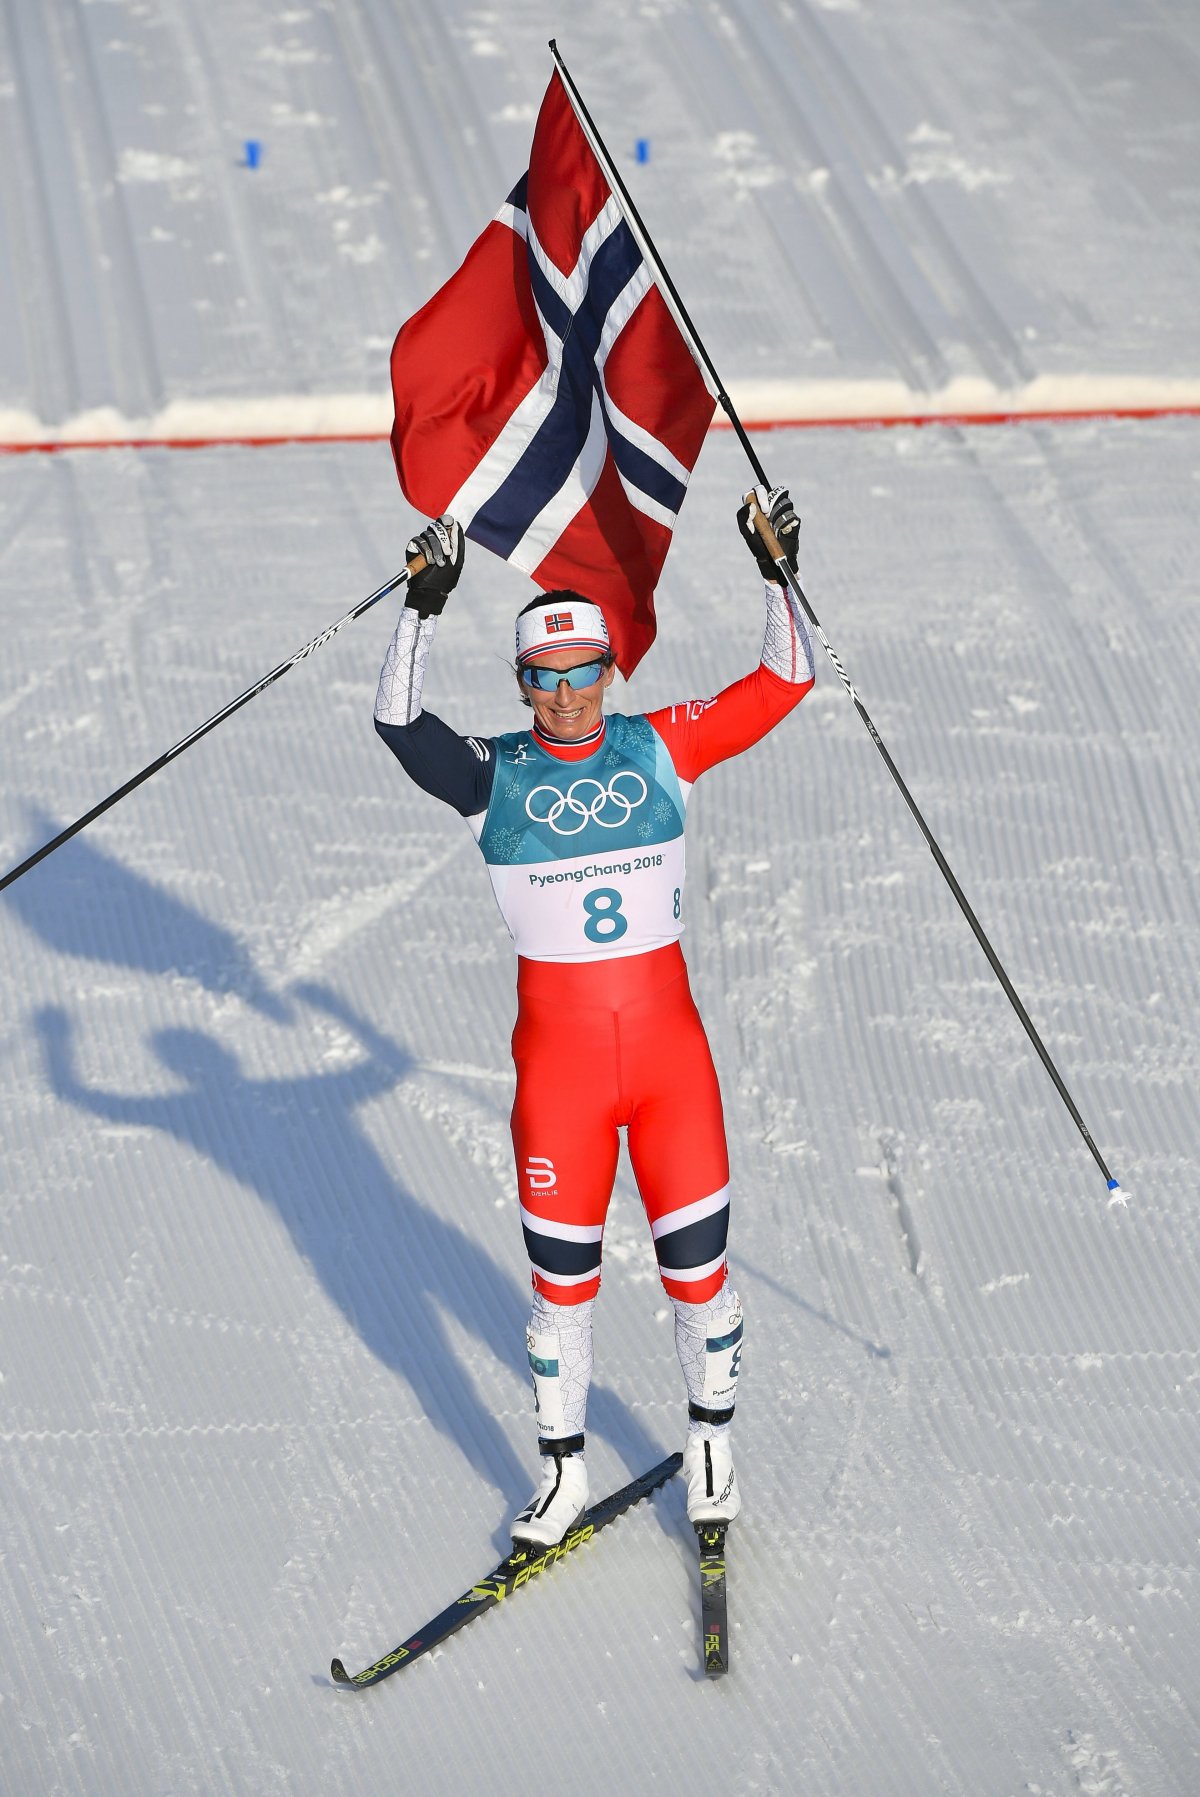 Phjongcshang 2018: történelmi norvég diadallal zárultak a téli olimpia versenyei